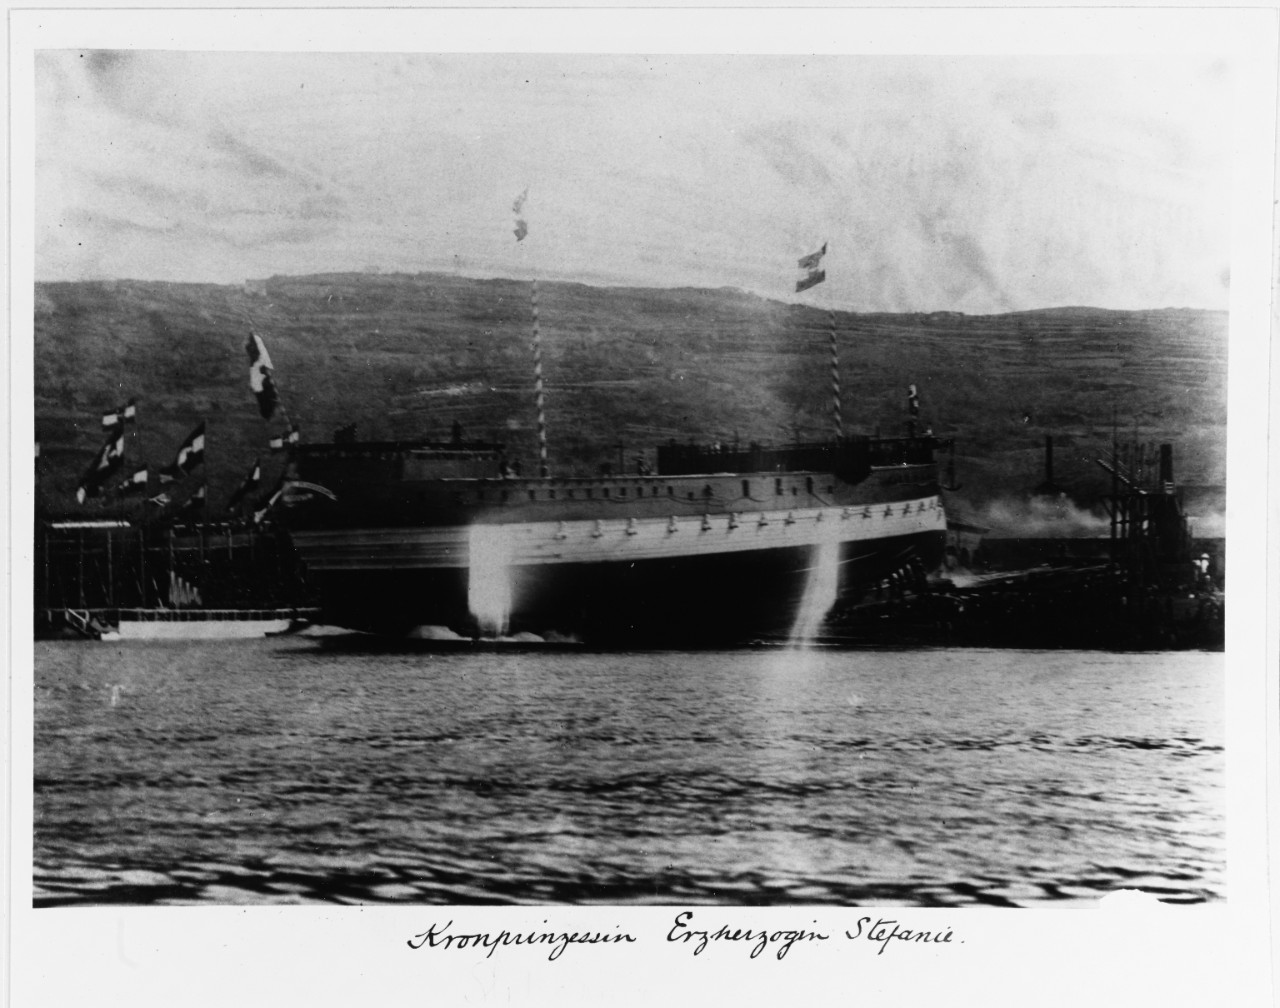 KRONPRINZESSIN ERZHERZOGIN STEPHANIE (Austrian battleship, 1887-1926)